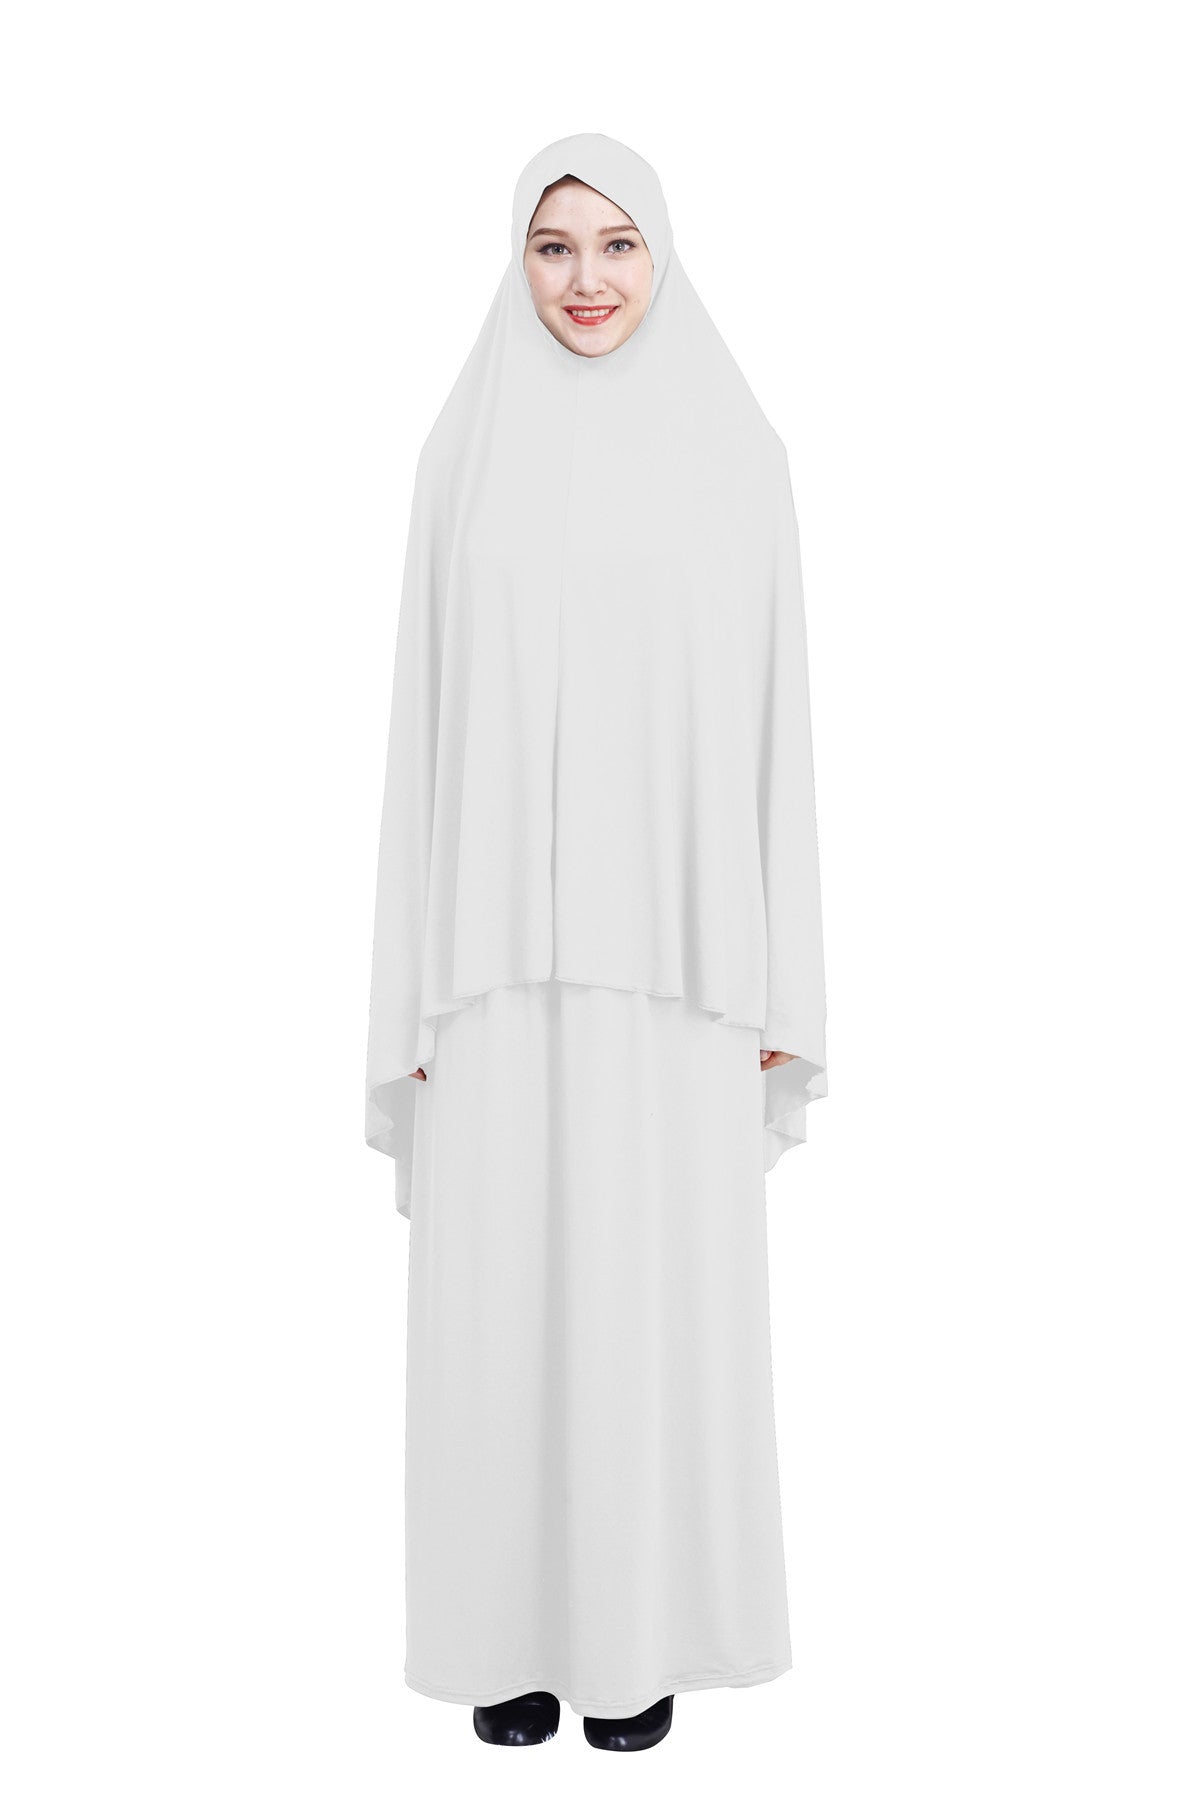 Muslim ladies hijab skirt suit prayer dress (MORE COLORS)